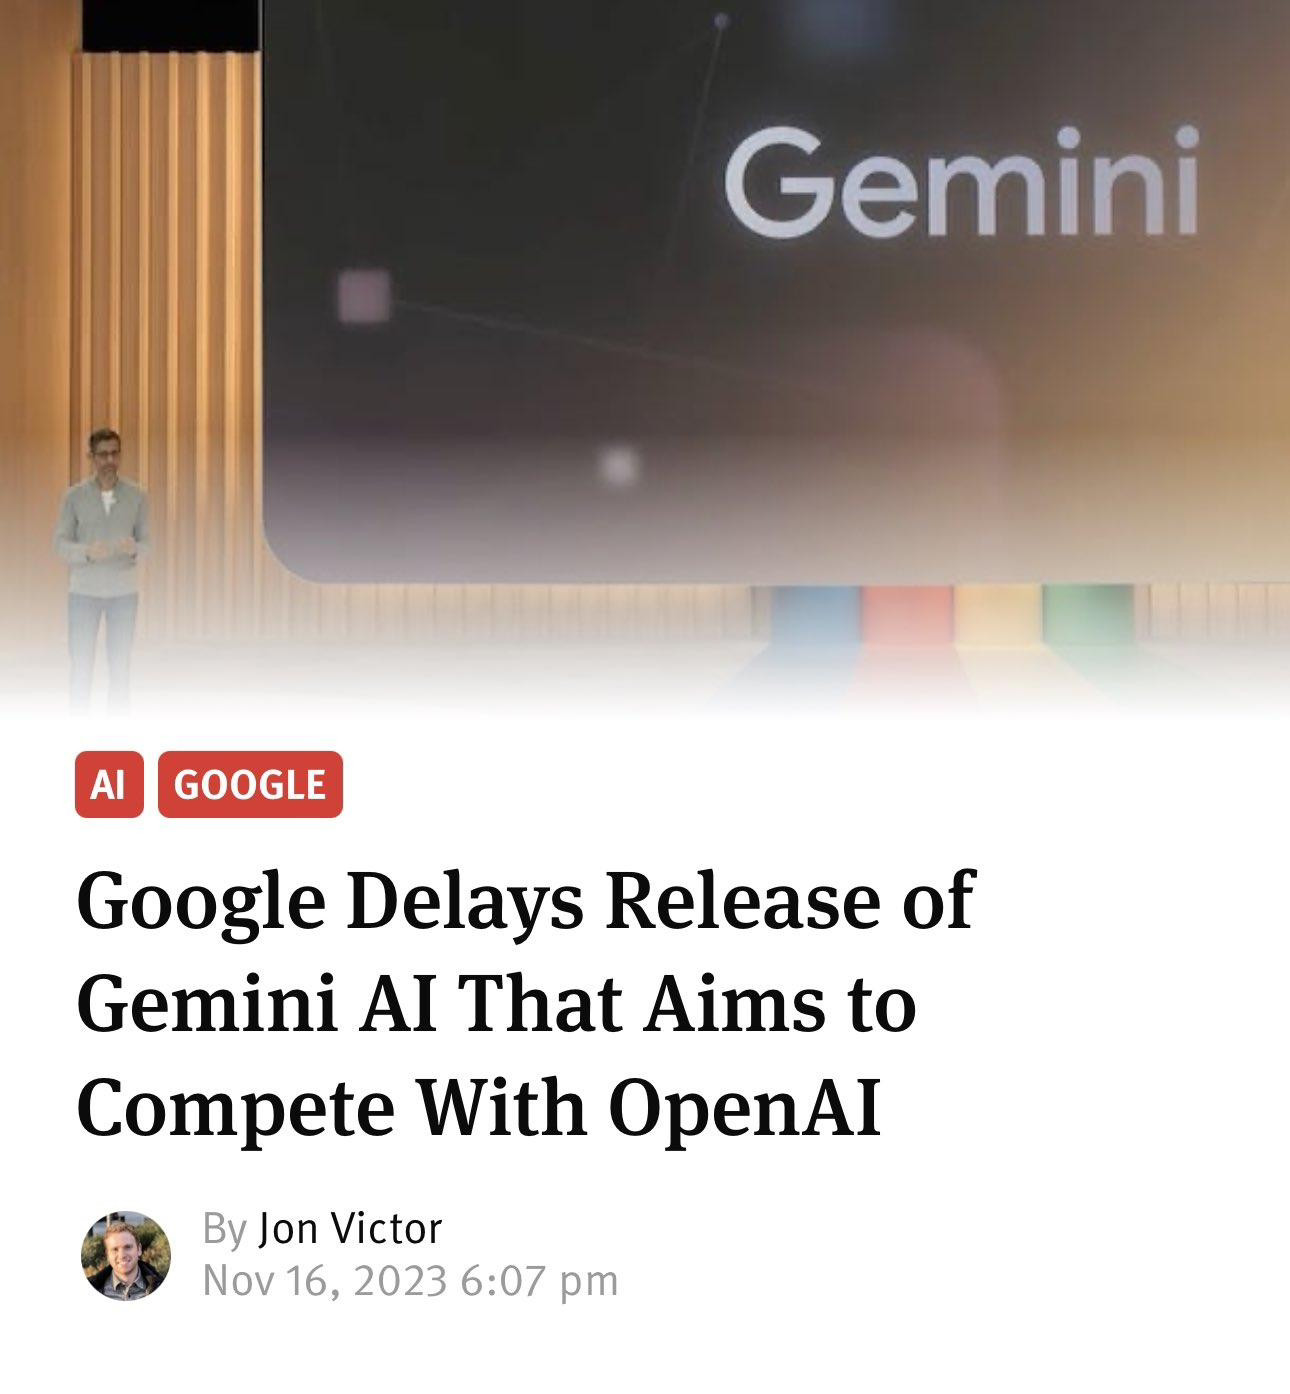 消息称谷歌 Gemini 模型“难产” 推迟至明年第一季度